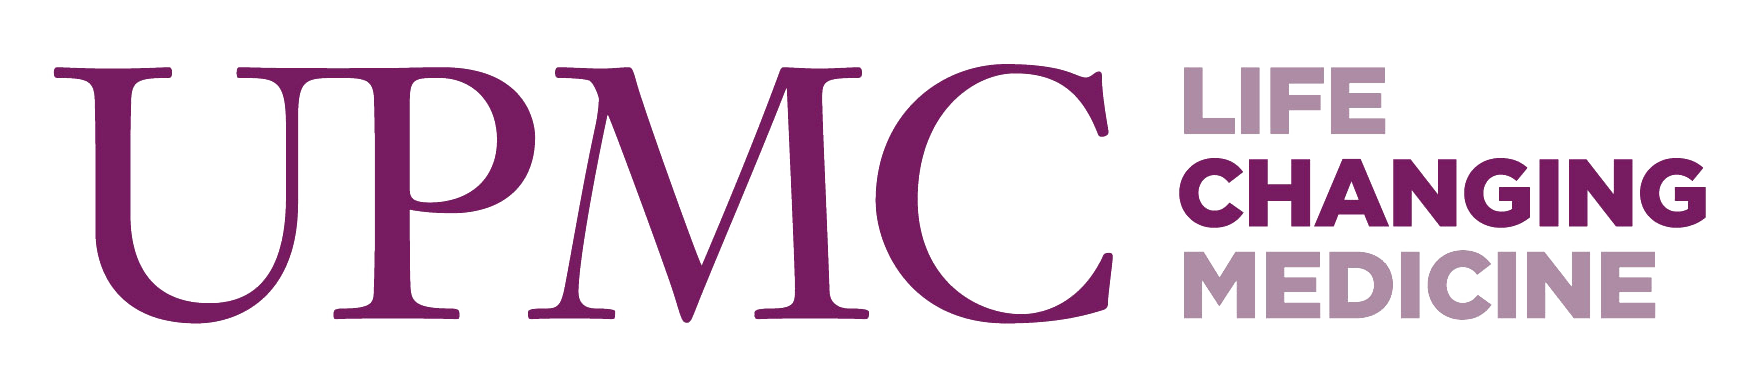 Micu Logo - MICU Education | Calendar